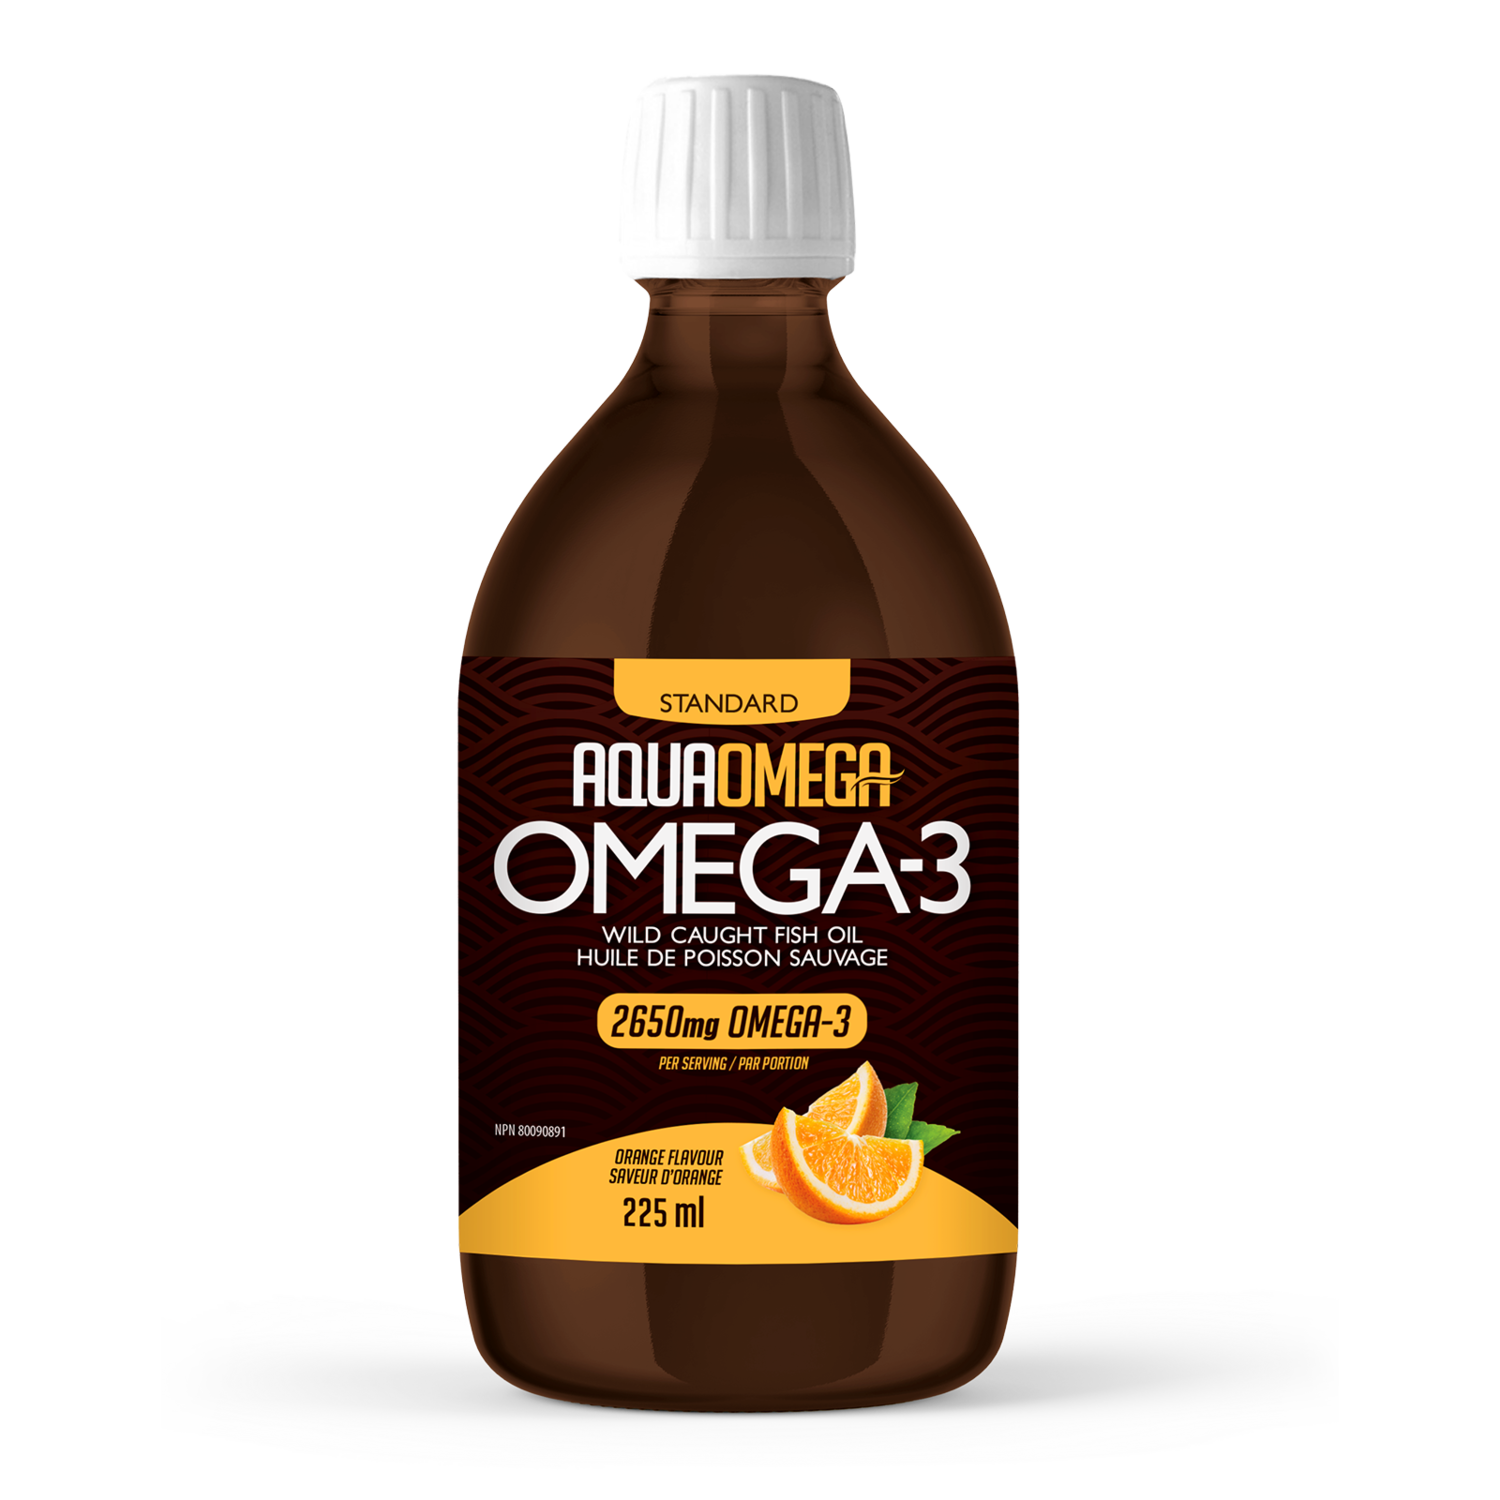 AquaOmega - Standard Omega-3 - 225ml